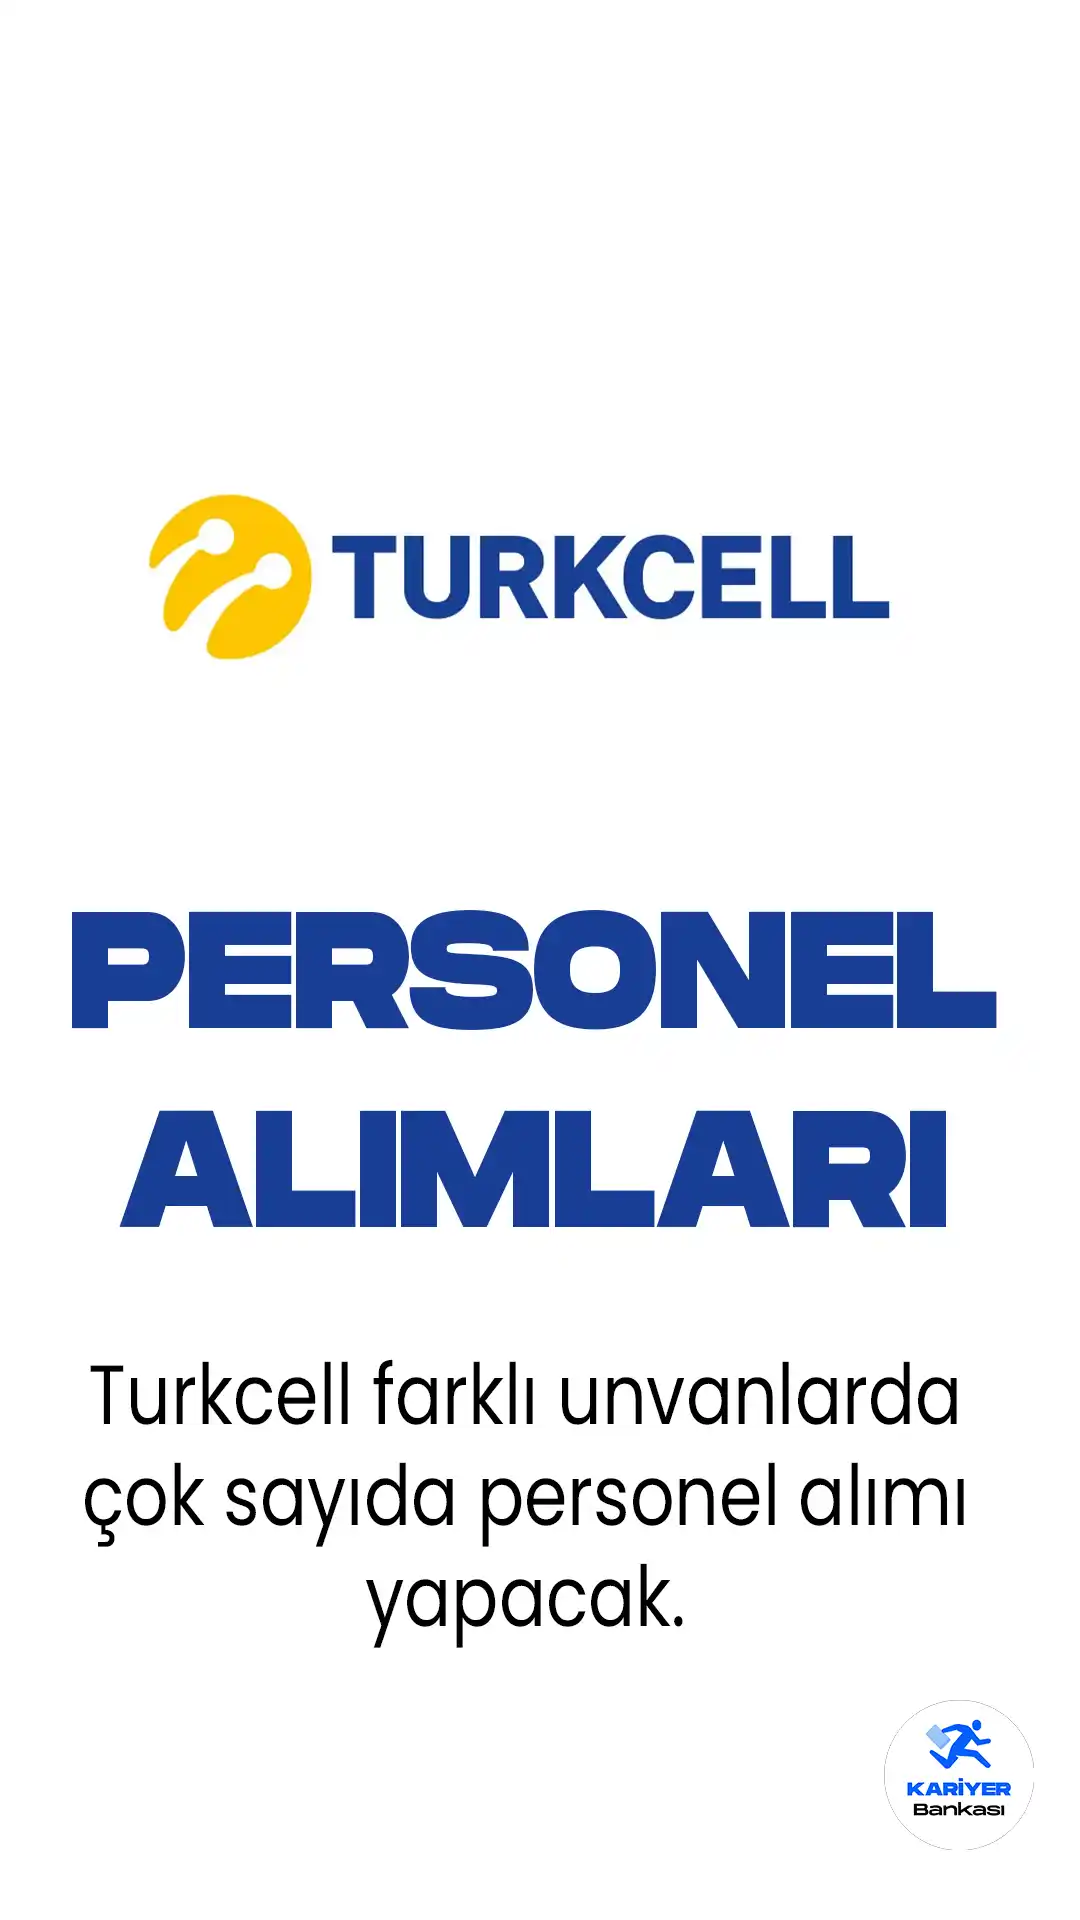 Turkcell'de çeşitli pozisyonlarda iş fırsatları! Küçükyalı, Ankara, Trabzon gibi lokasyonlarda uzman ve yönetici alımları yapılacak.